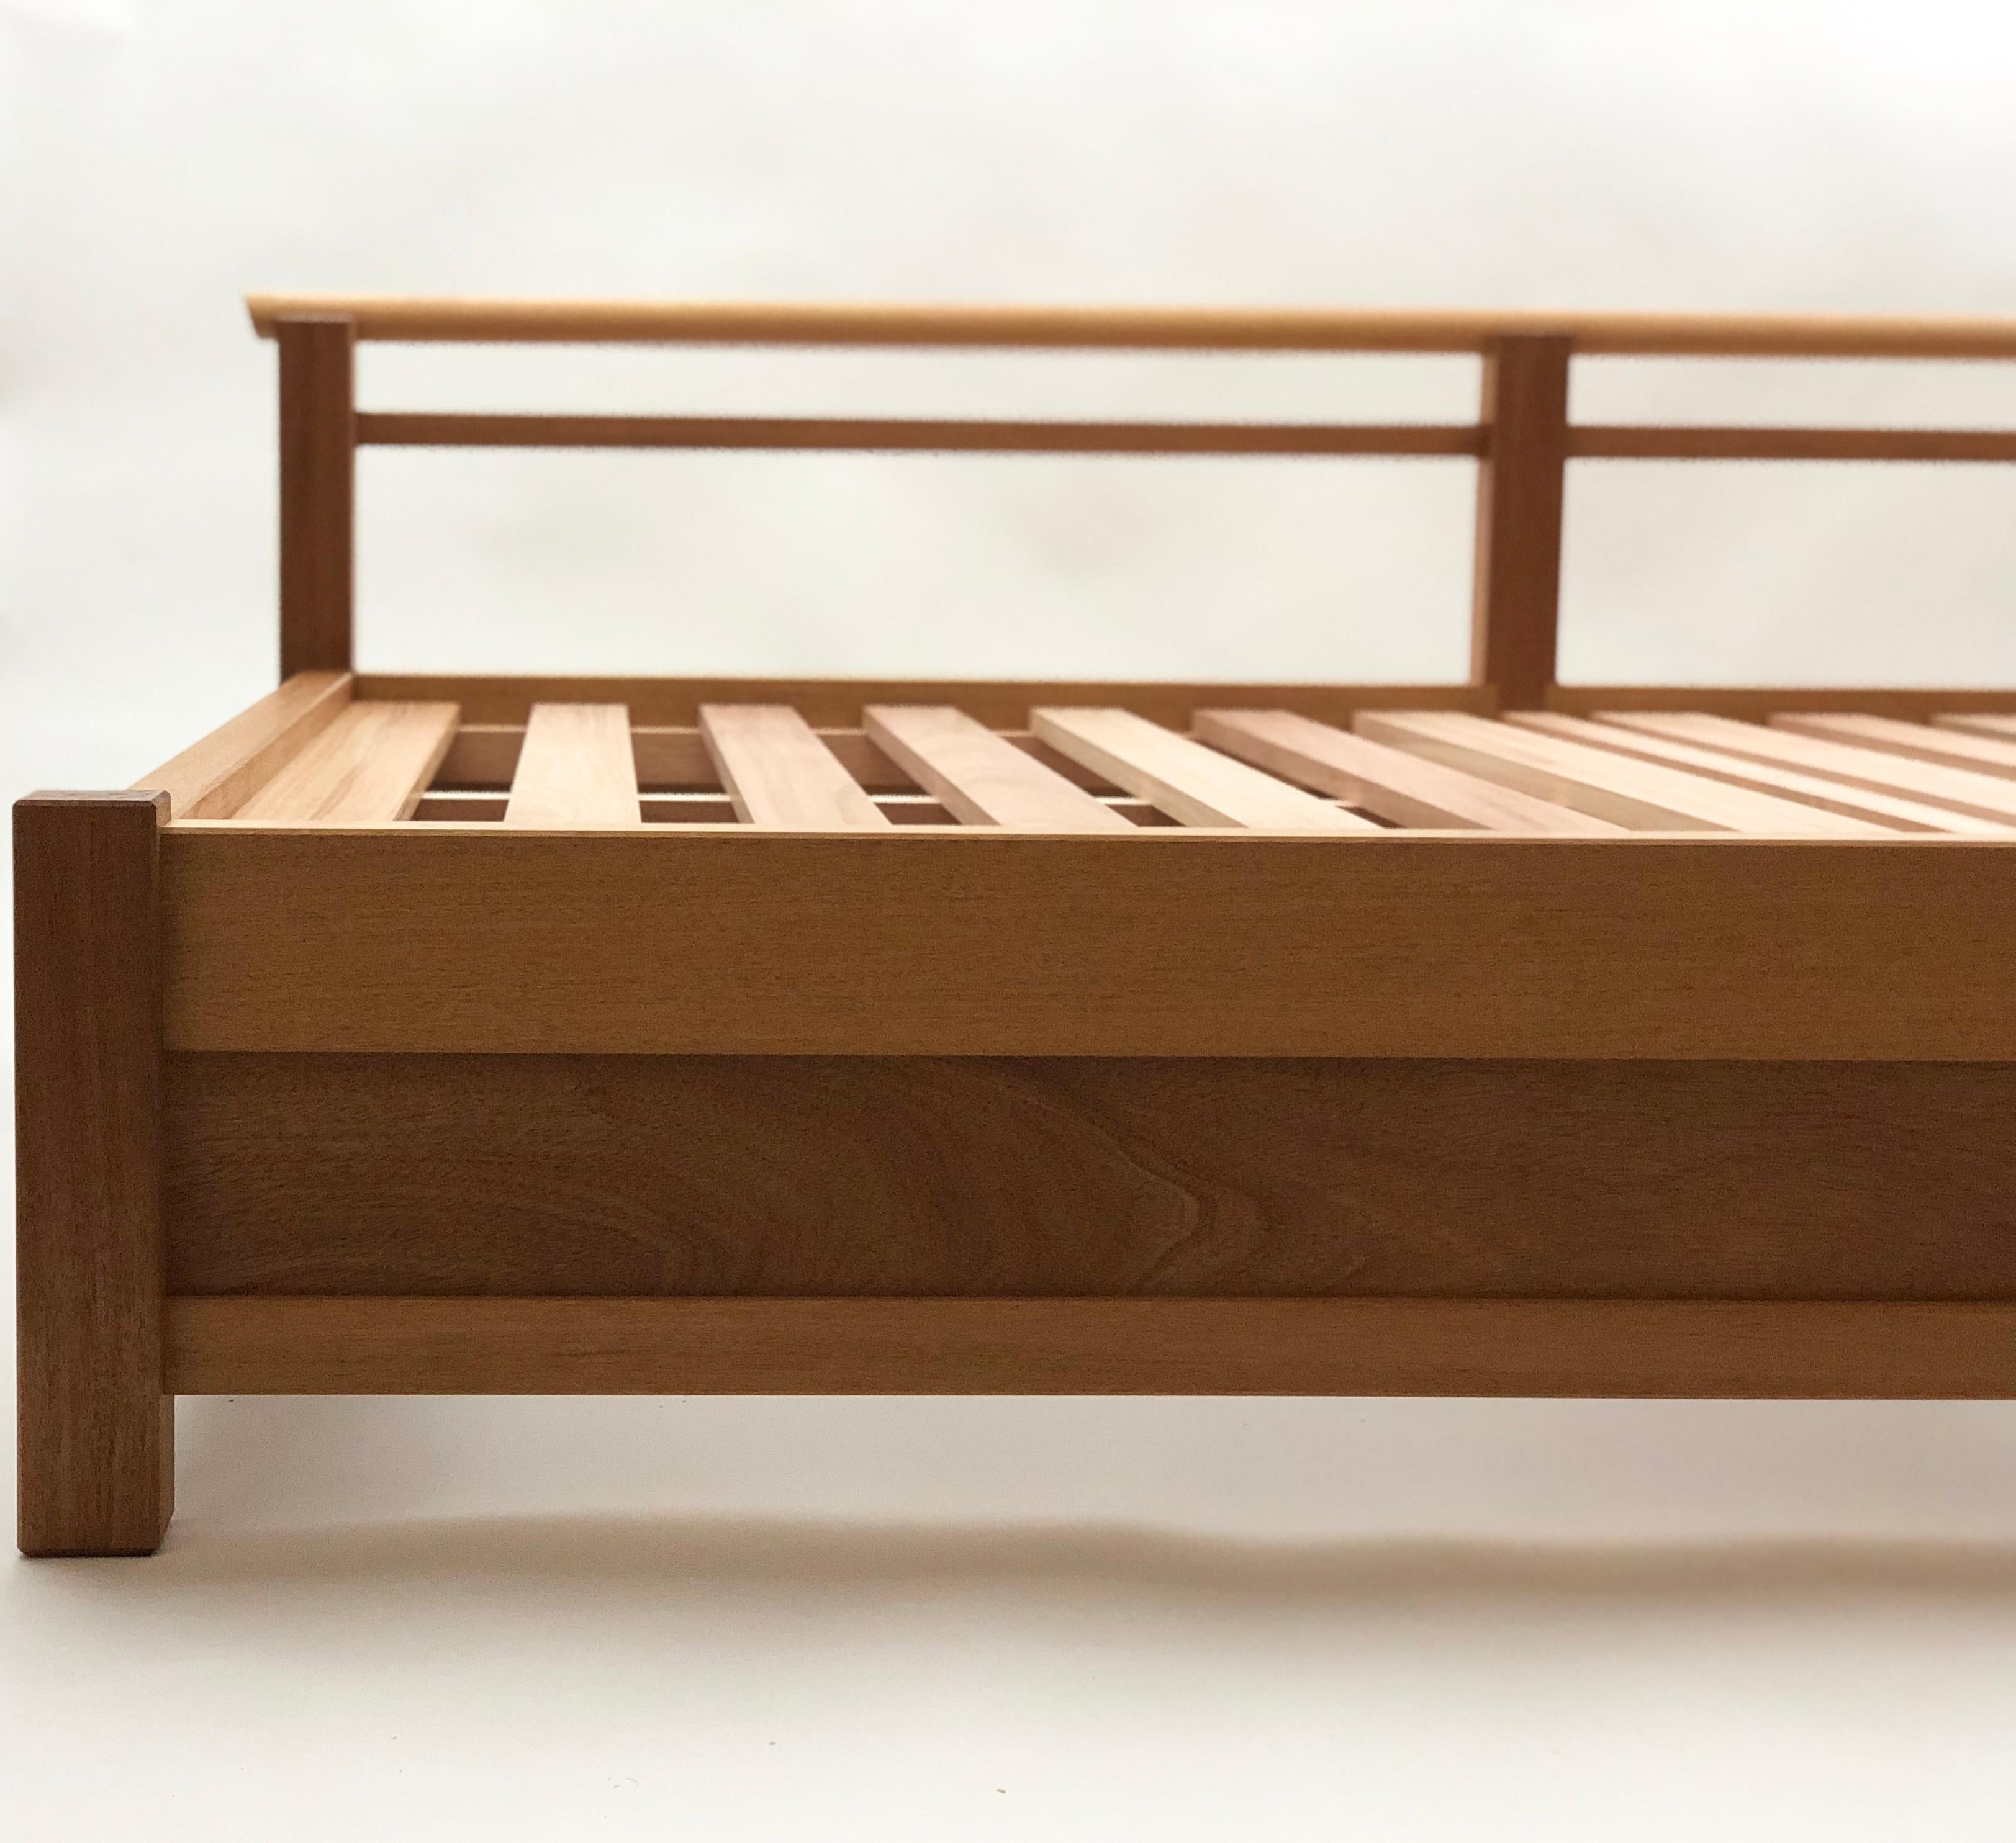 Ce lit de jour a été inspiré par le pont Uji du temple Naiku au Japon. Il est réalisé en acajou du Honduras et conçu pour une utilisation intérieure/extérieure en acajou du Honduras. Ce lit de jour est également disponible en noyer huilé ou en frêne